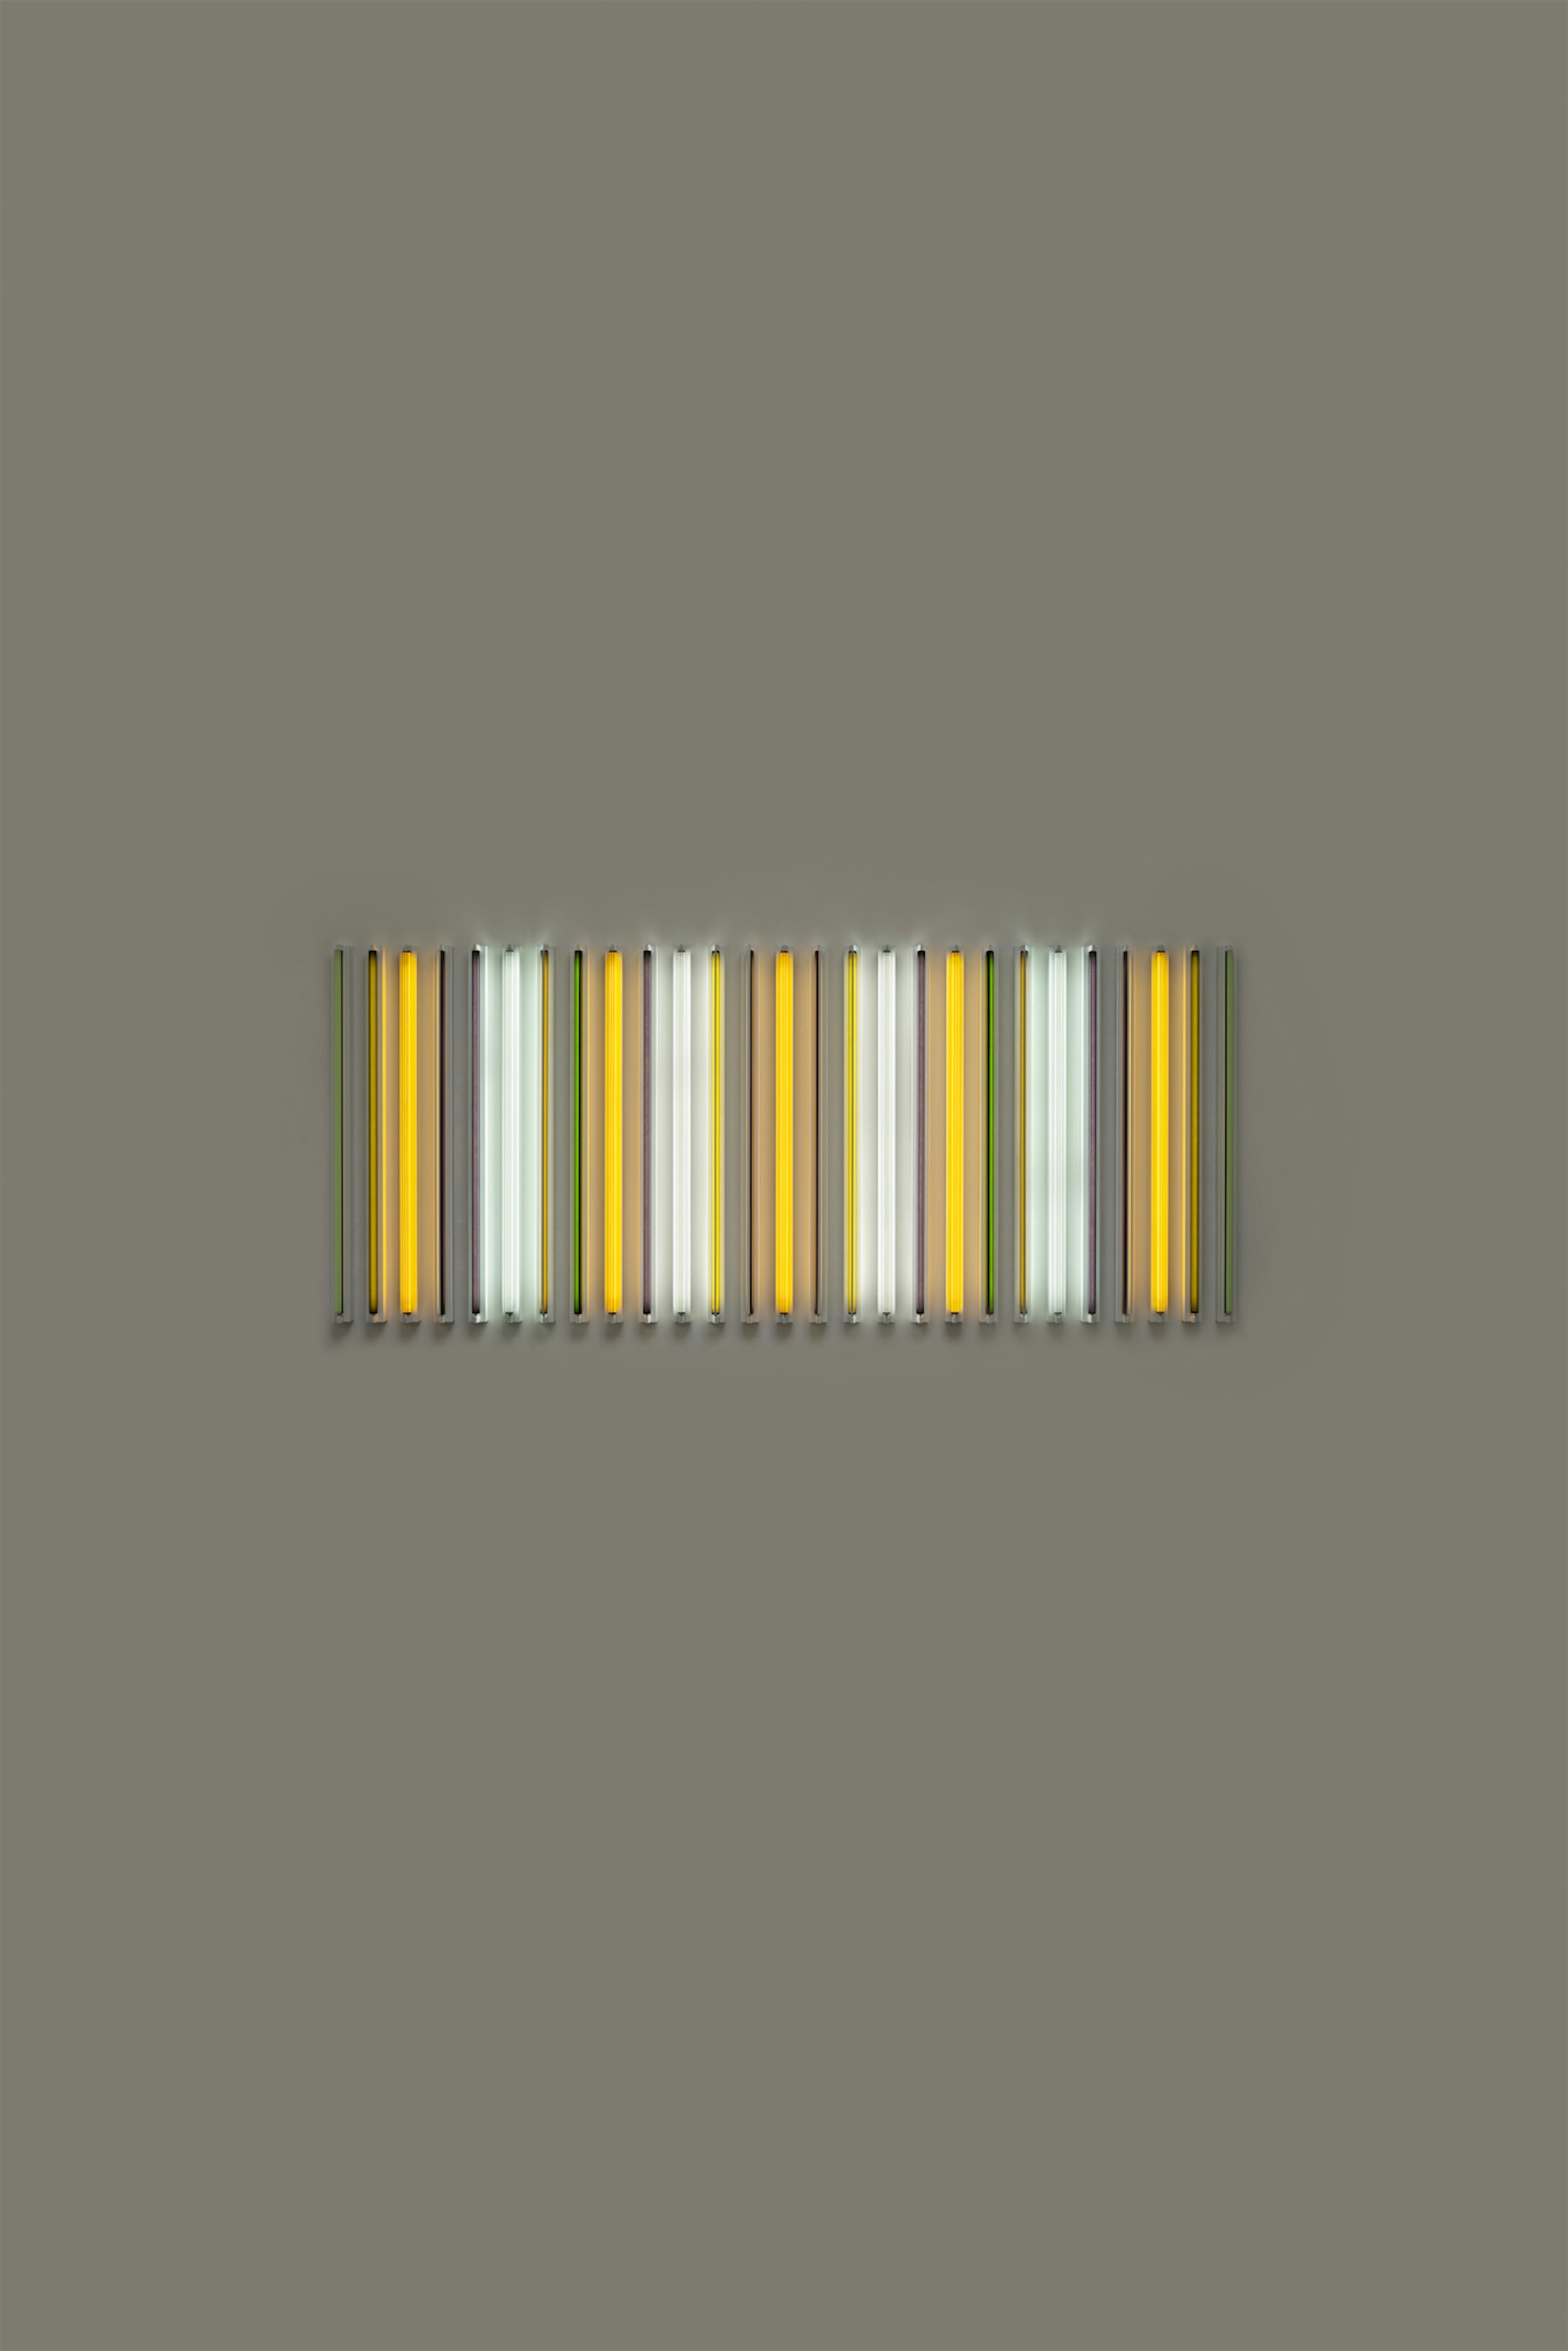 Bilde av lydinstallasjon med gule, grå, grønne og hvite lysrør